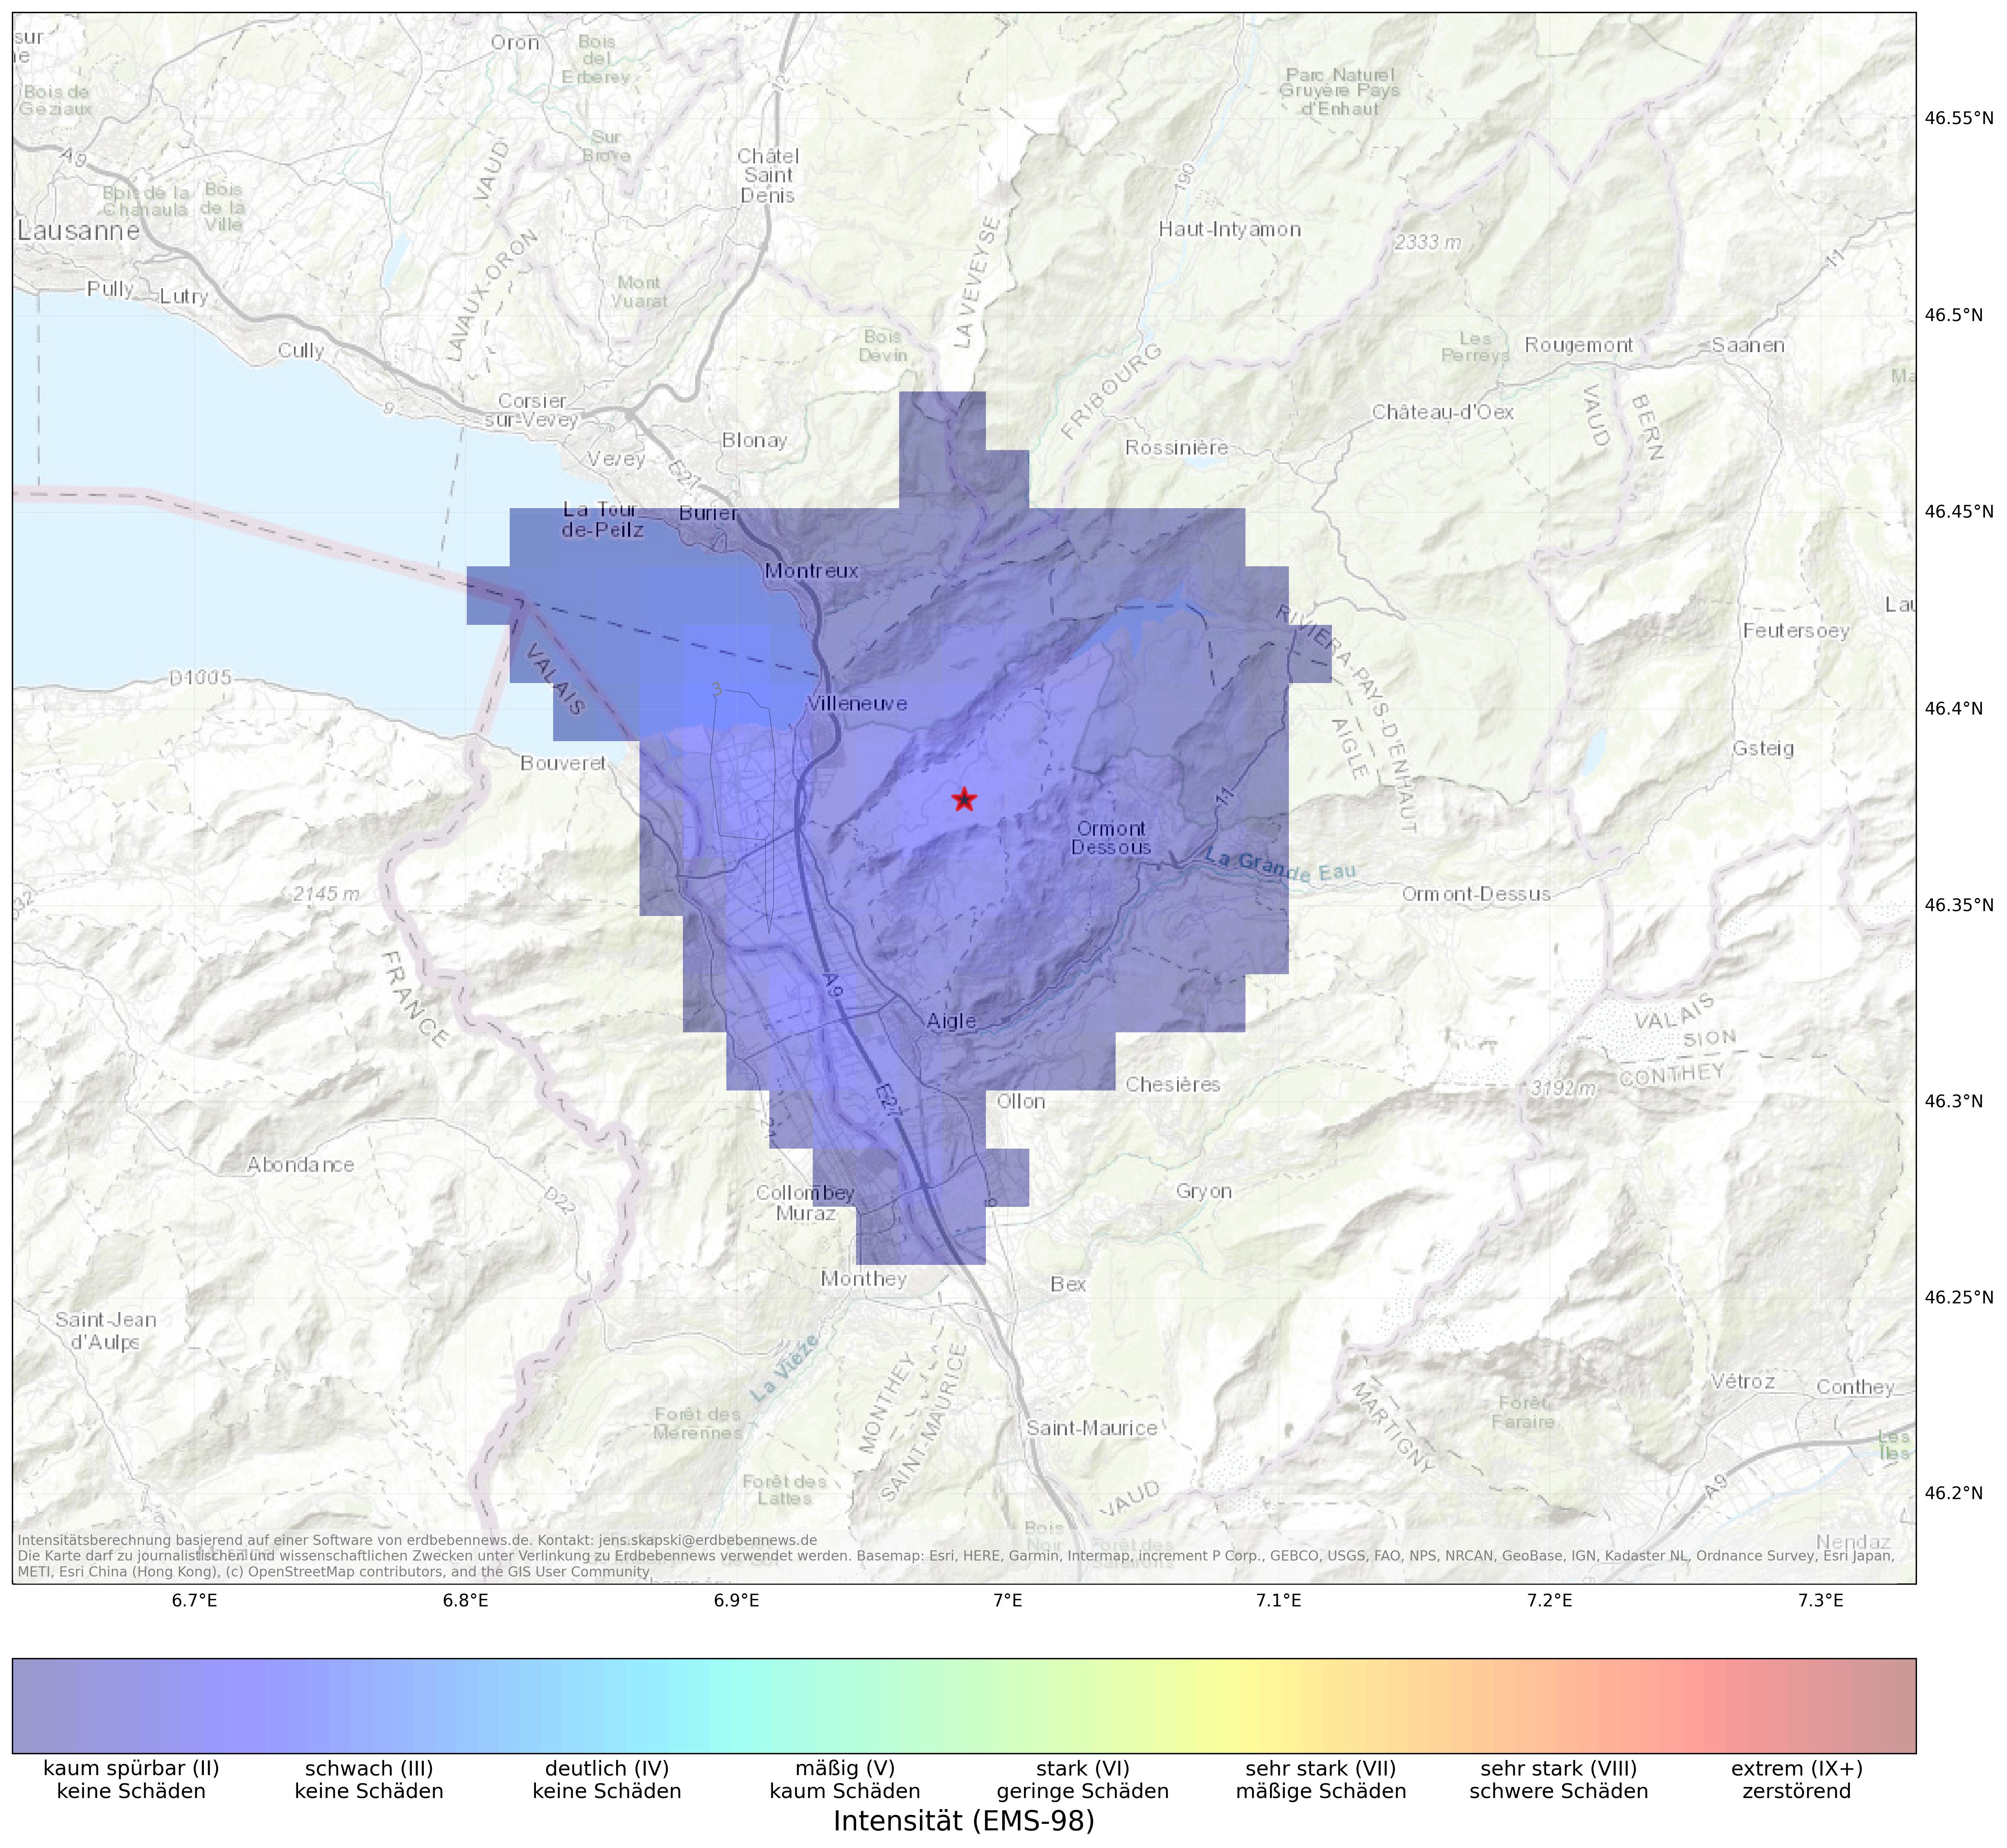 Berechnete Intensität (ShakeMap) des Erdbebens der Stärke 2.7 am 15. März, 6:19 Uhr in Schweiz